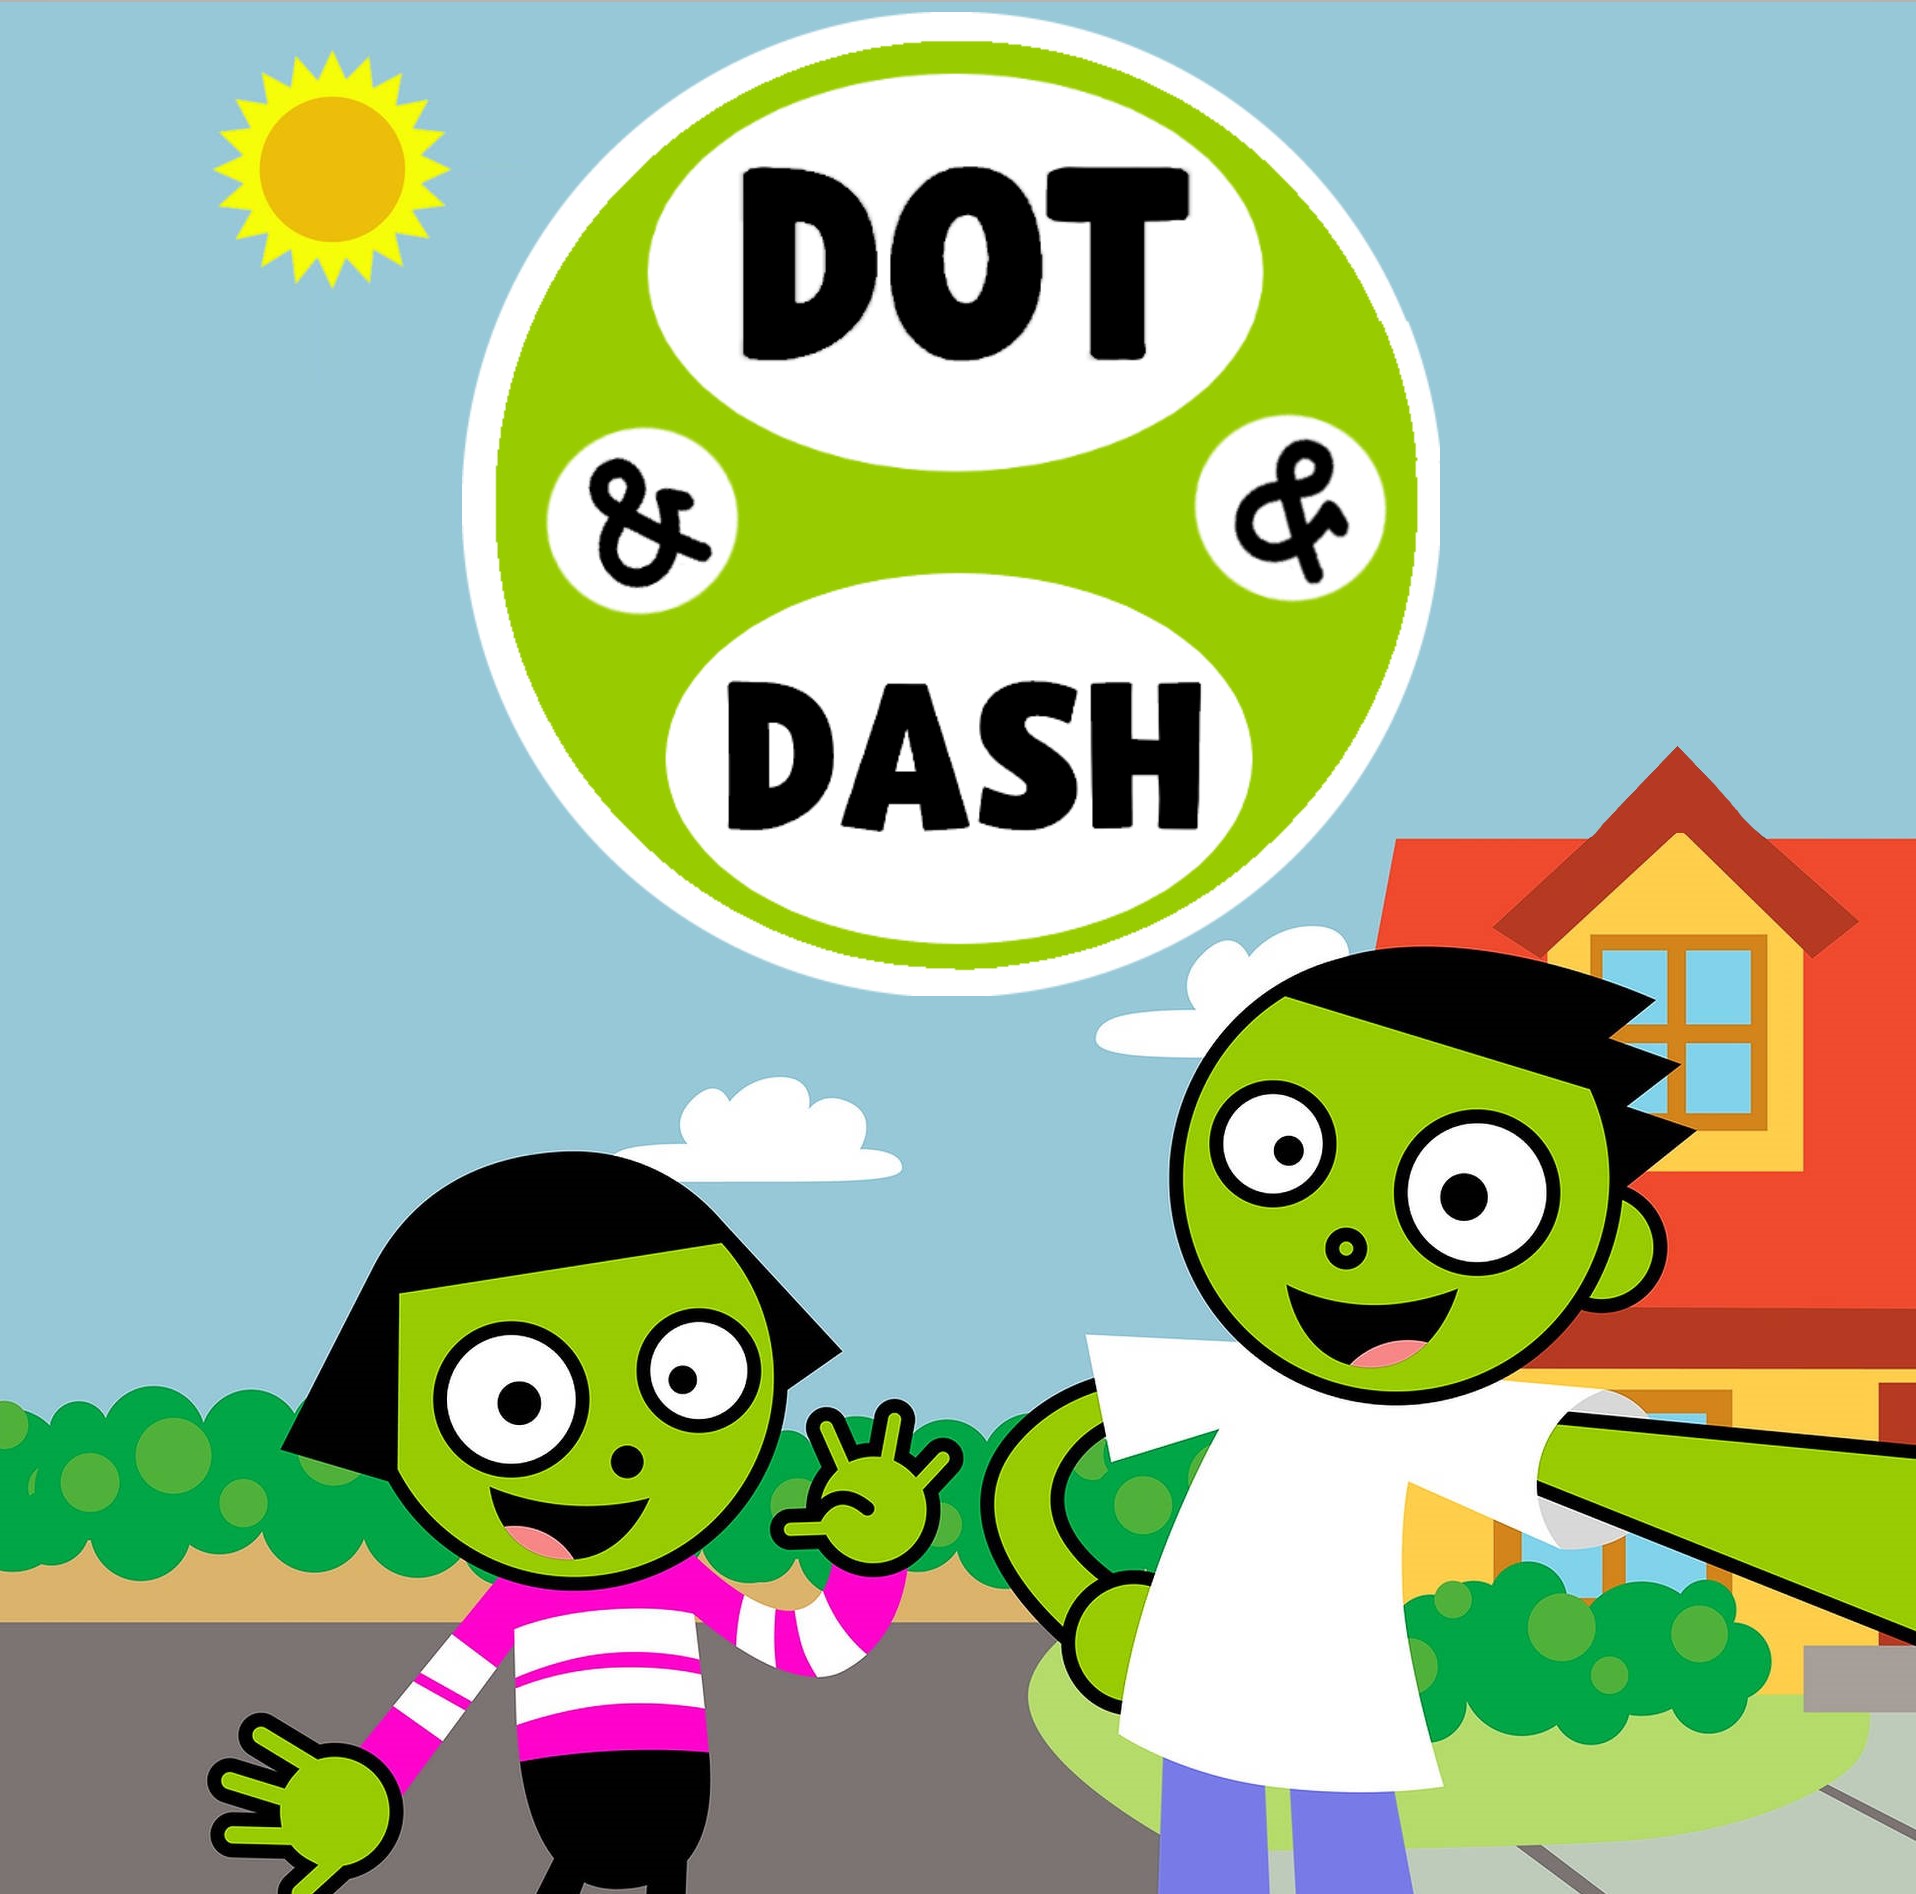 Dot & Dash, The Fandub Database